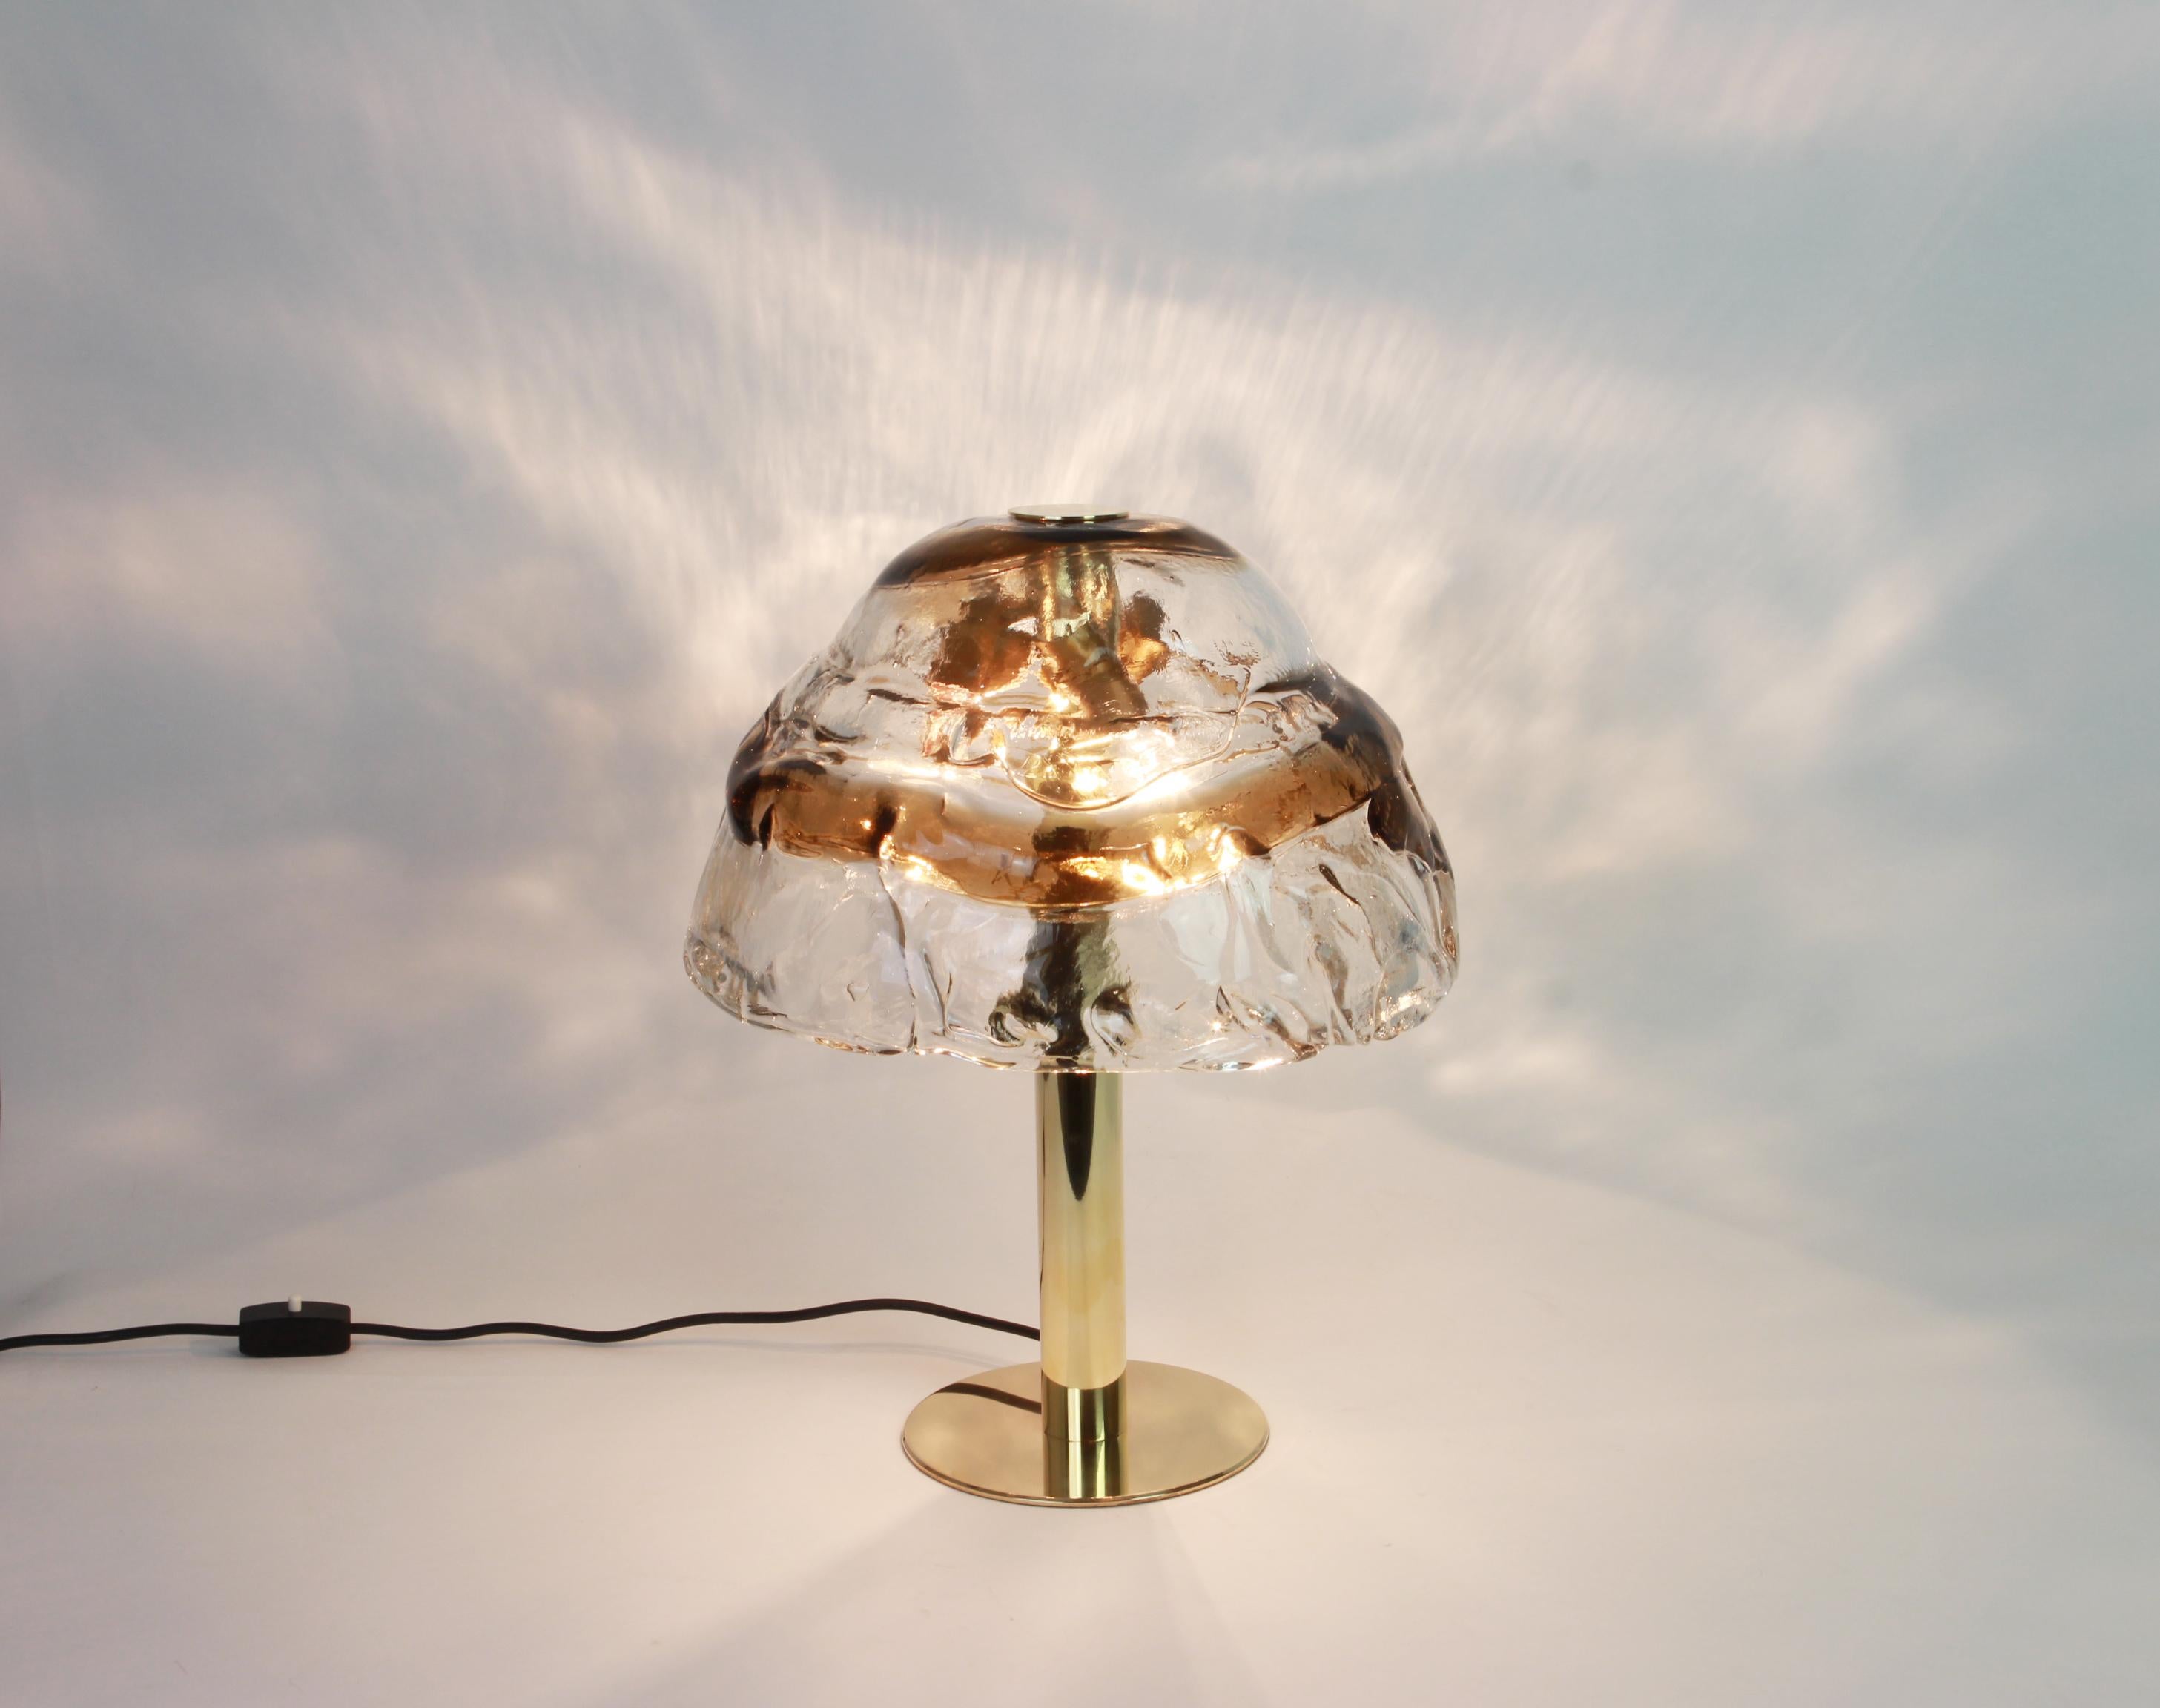 Superbe lampe de table en verre de Murano par Kalmar, 1970
Verre de Murano tourbillonnant fumé, panneaux de verre en cristal clair torsadé avec une bande de couleur ambre légèrement dorée.

Il nécessite 3 ampoules E27 standard. (Max 50 watts